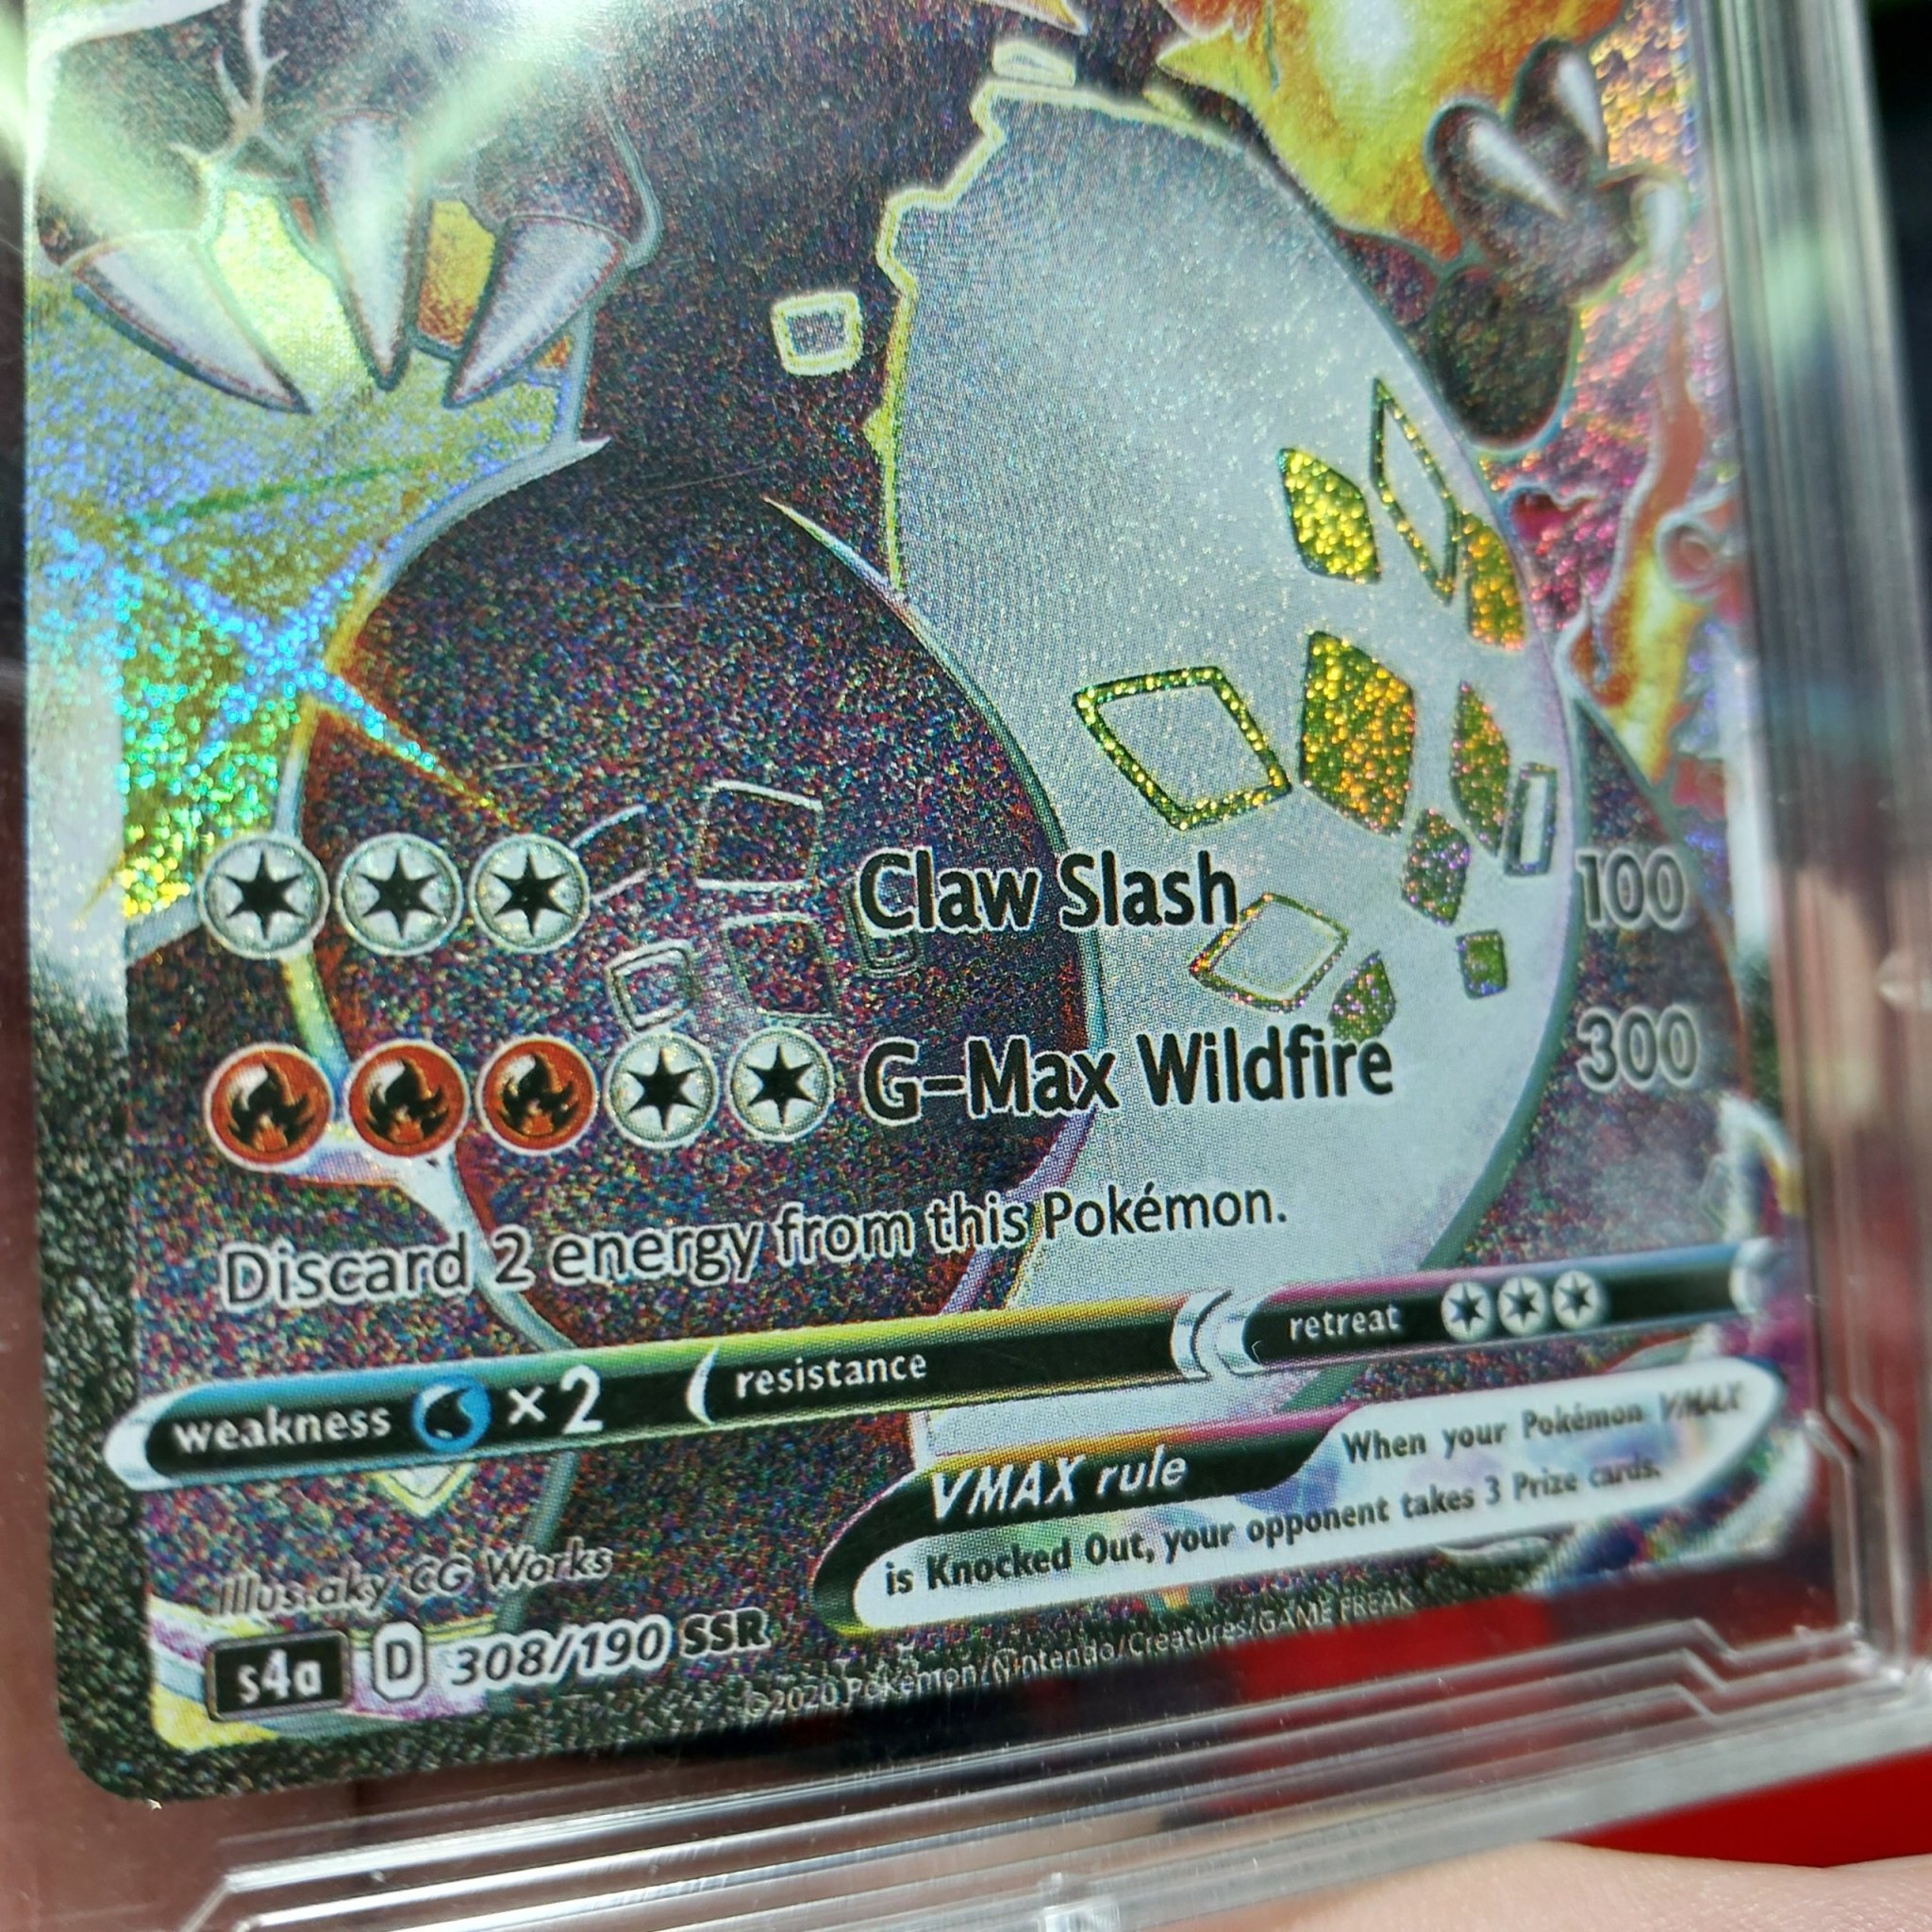 [LIM SSR VMAX]Thẻ bài Pokemon Charizard 308 190 hắc hỏa long shiny 1459 d37 10